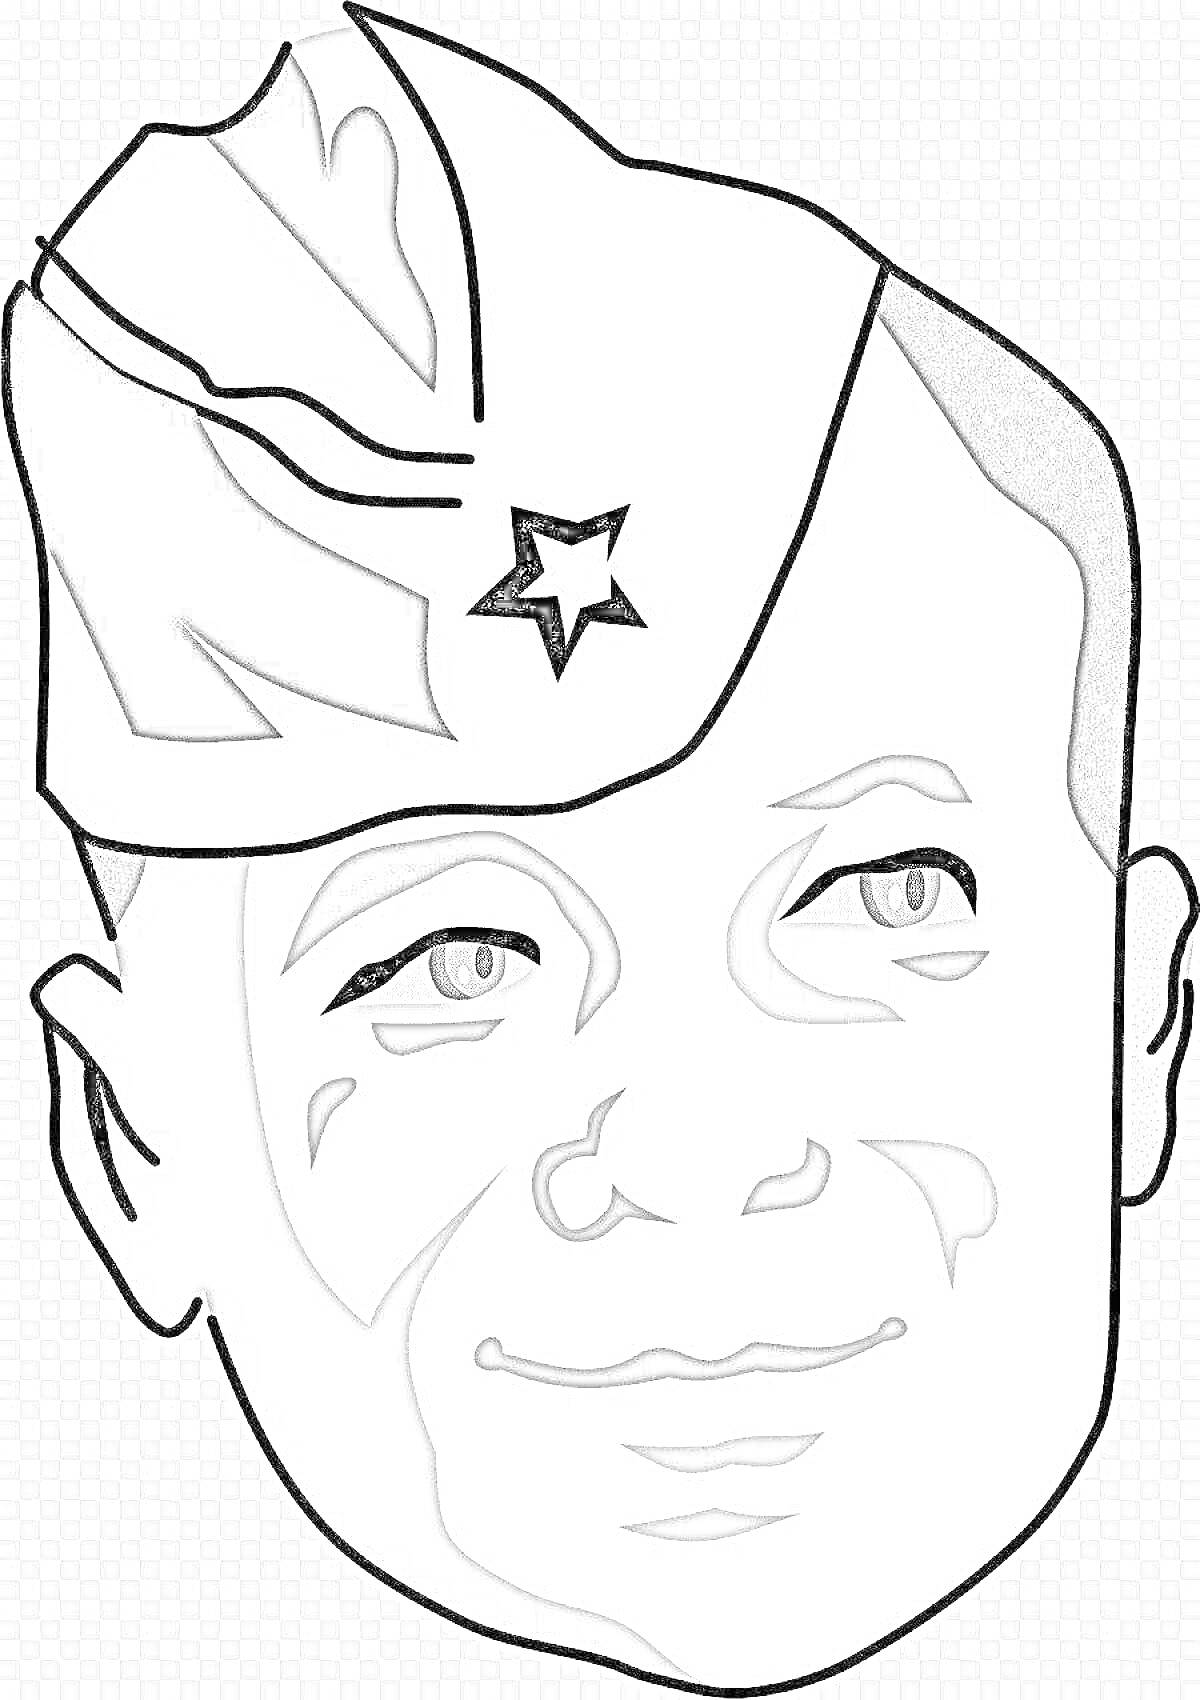 Лицо солдата в пилотке с звездой